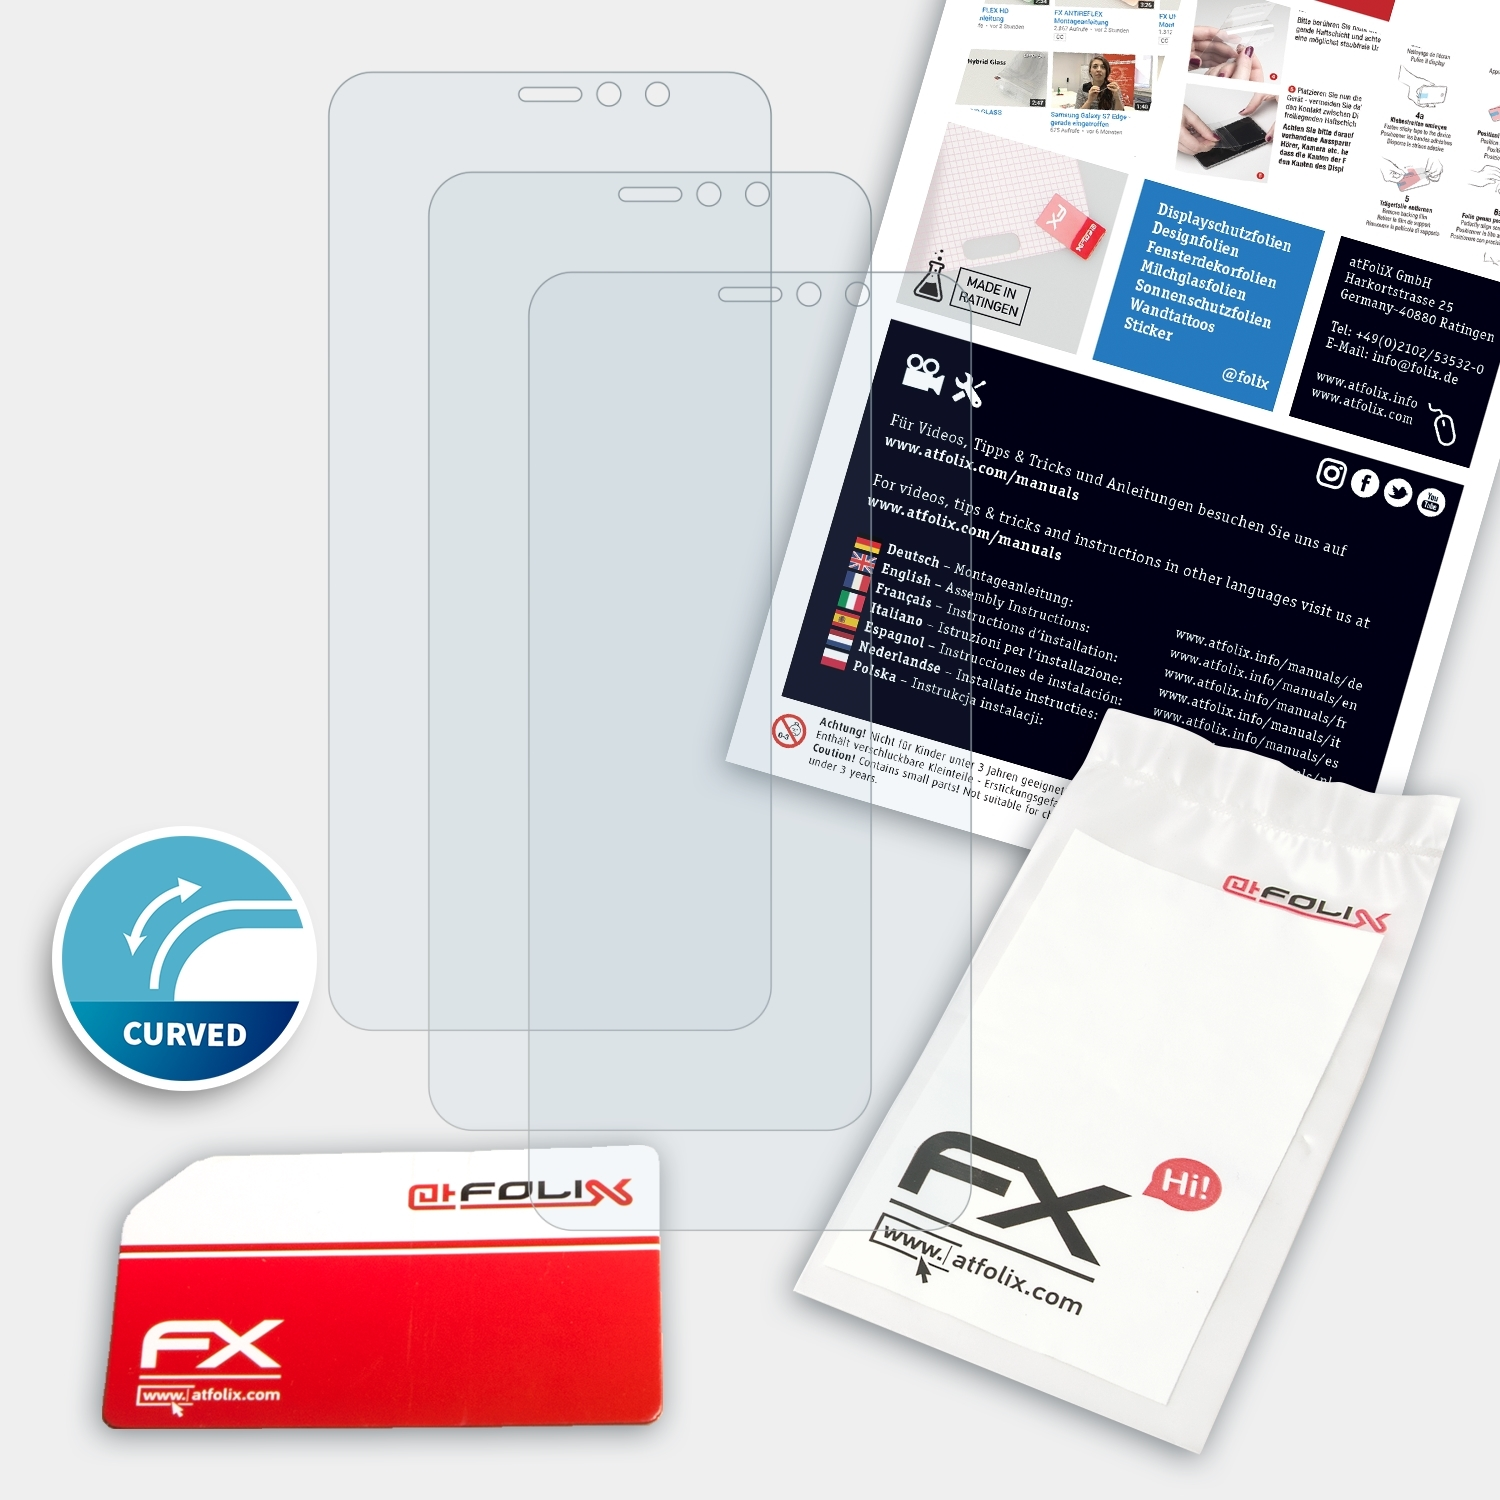 ATFOLIX 3x U11 EYEs) HTC FX-ActiFleX Displayschutz(für